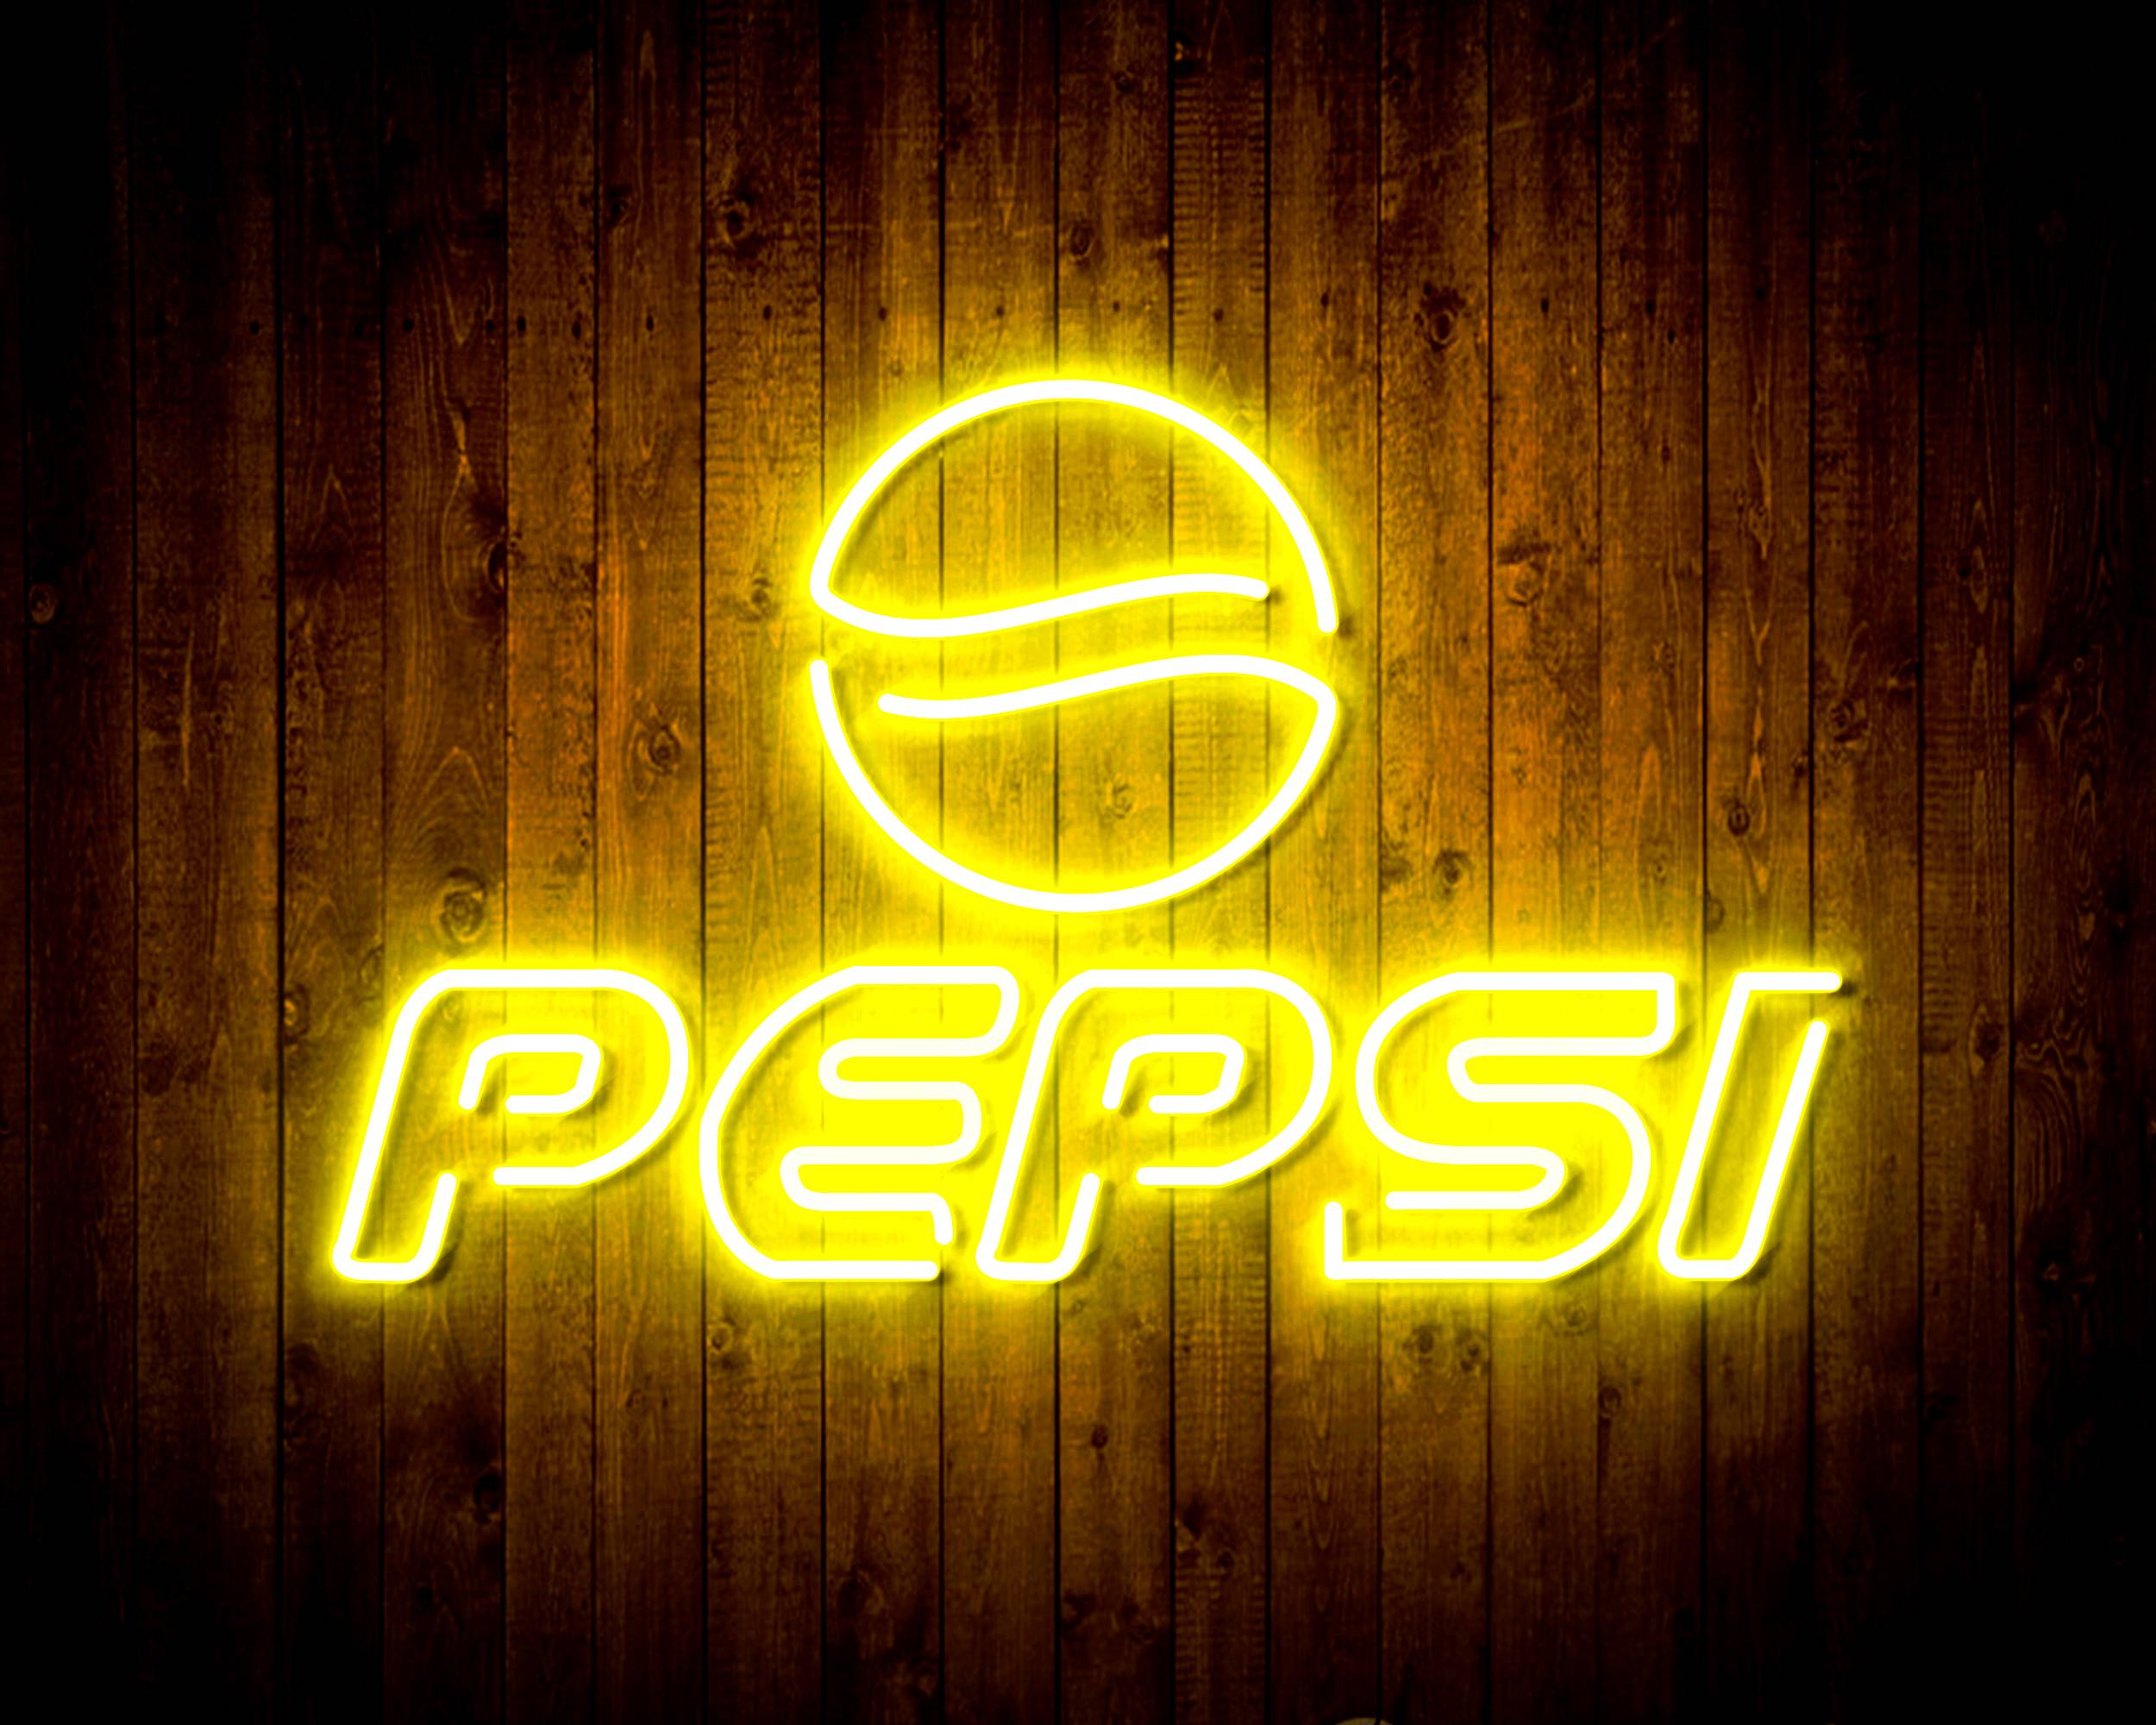 Pepsi Handmade LED Neon Light Sign